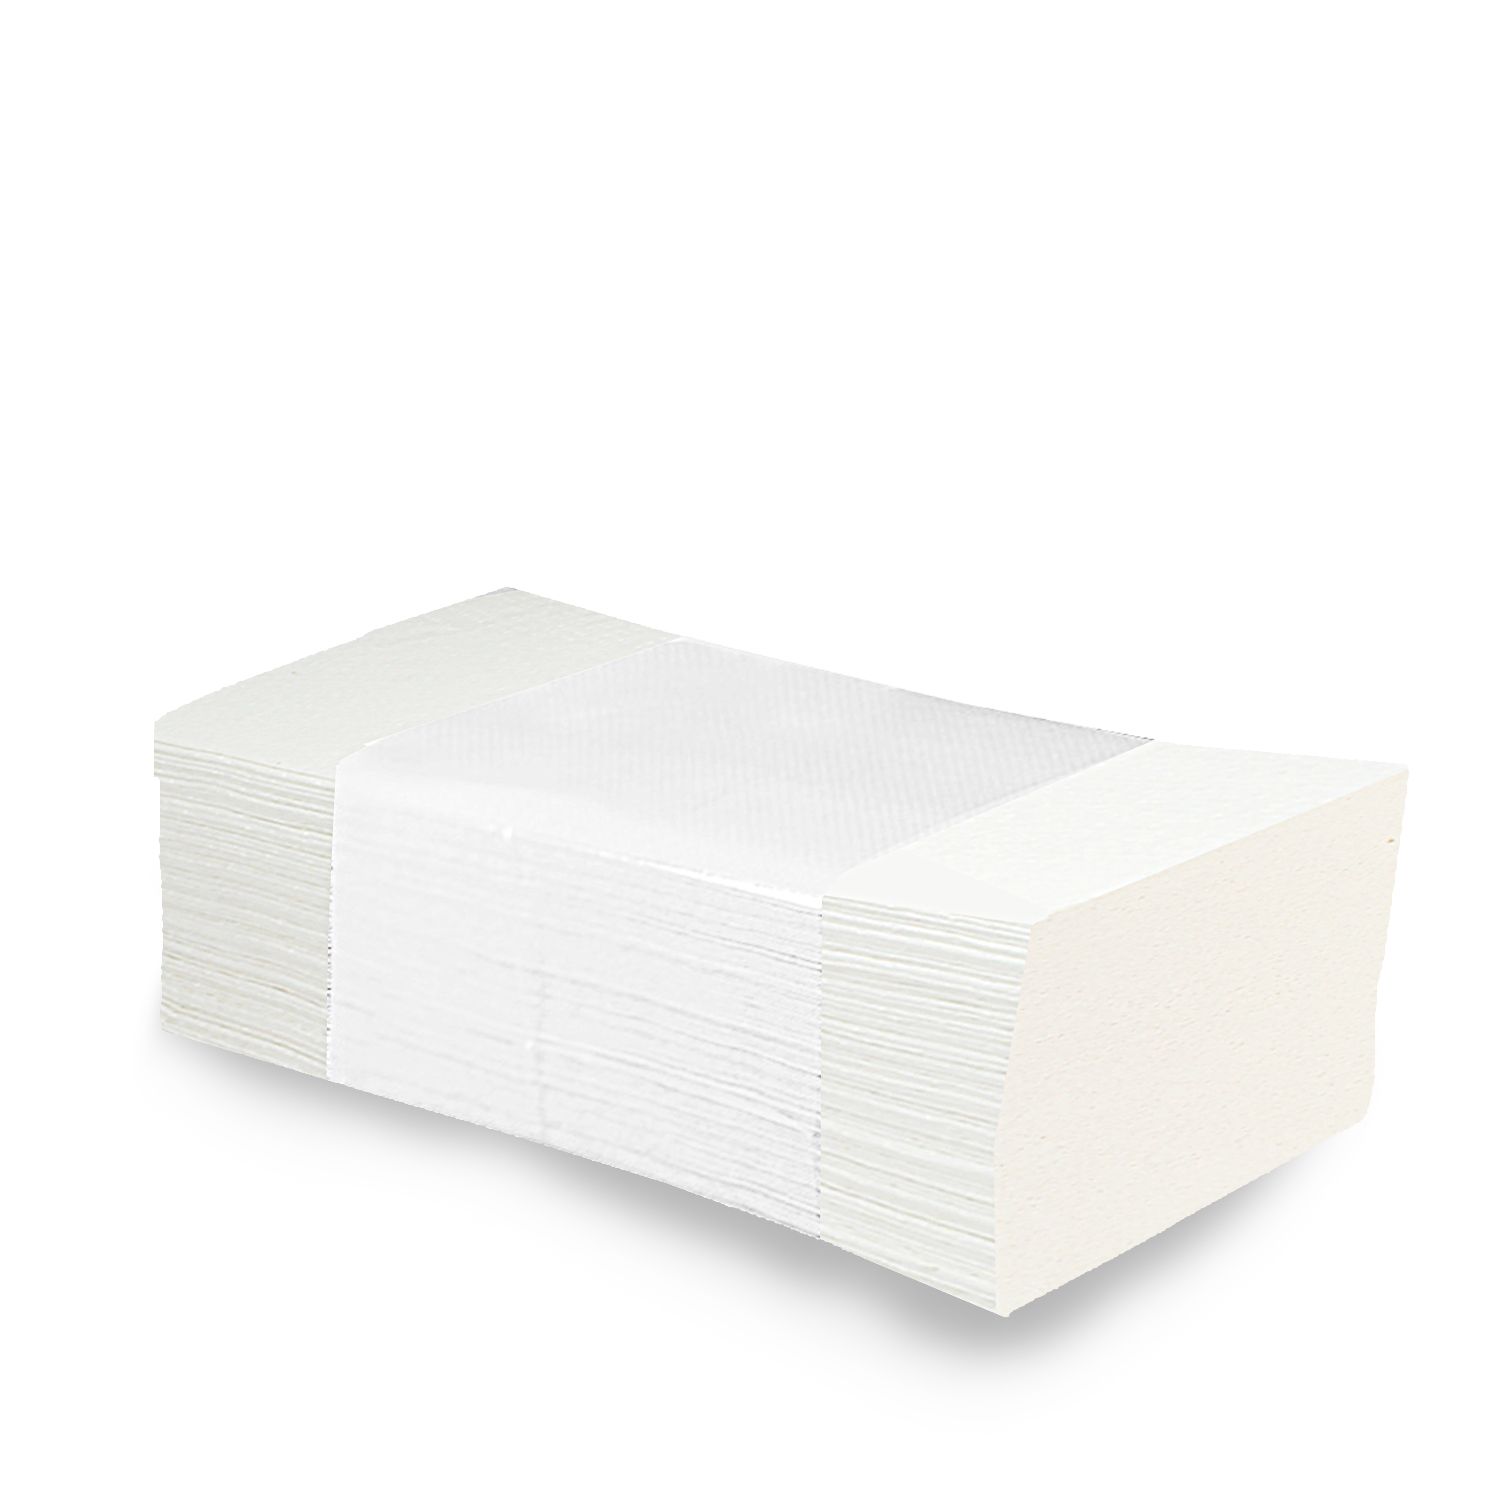 Uteráky tissue ZZ "V", 2-vrstvové, 25 x 21 cm, biele [3000 ks] 